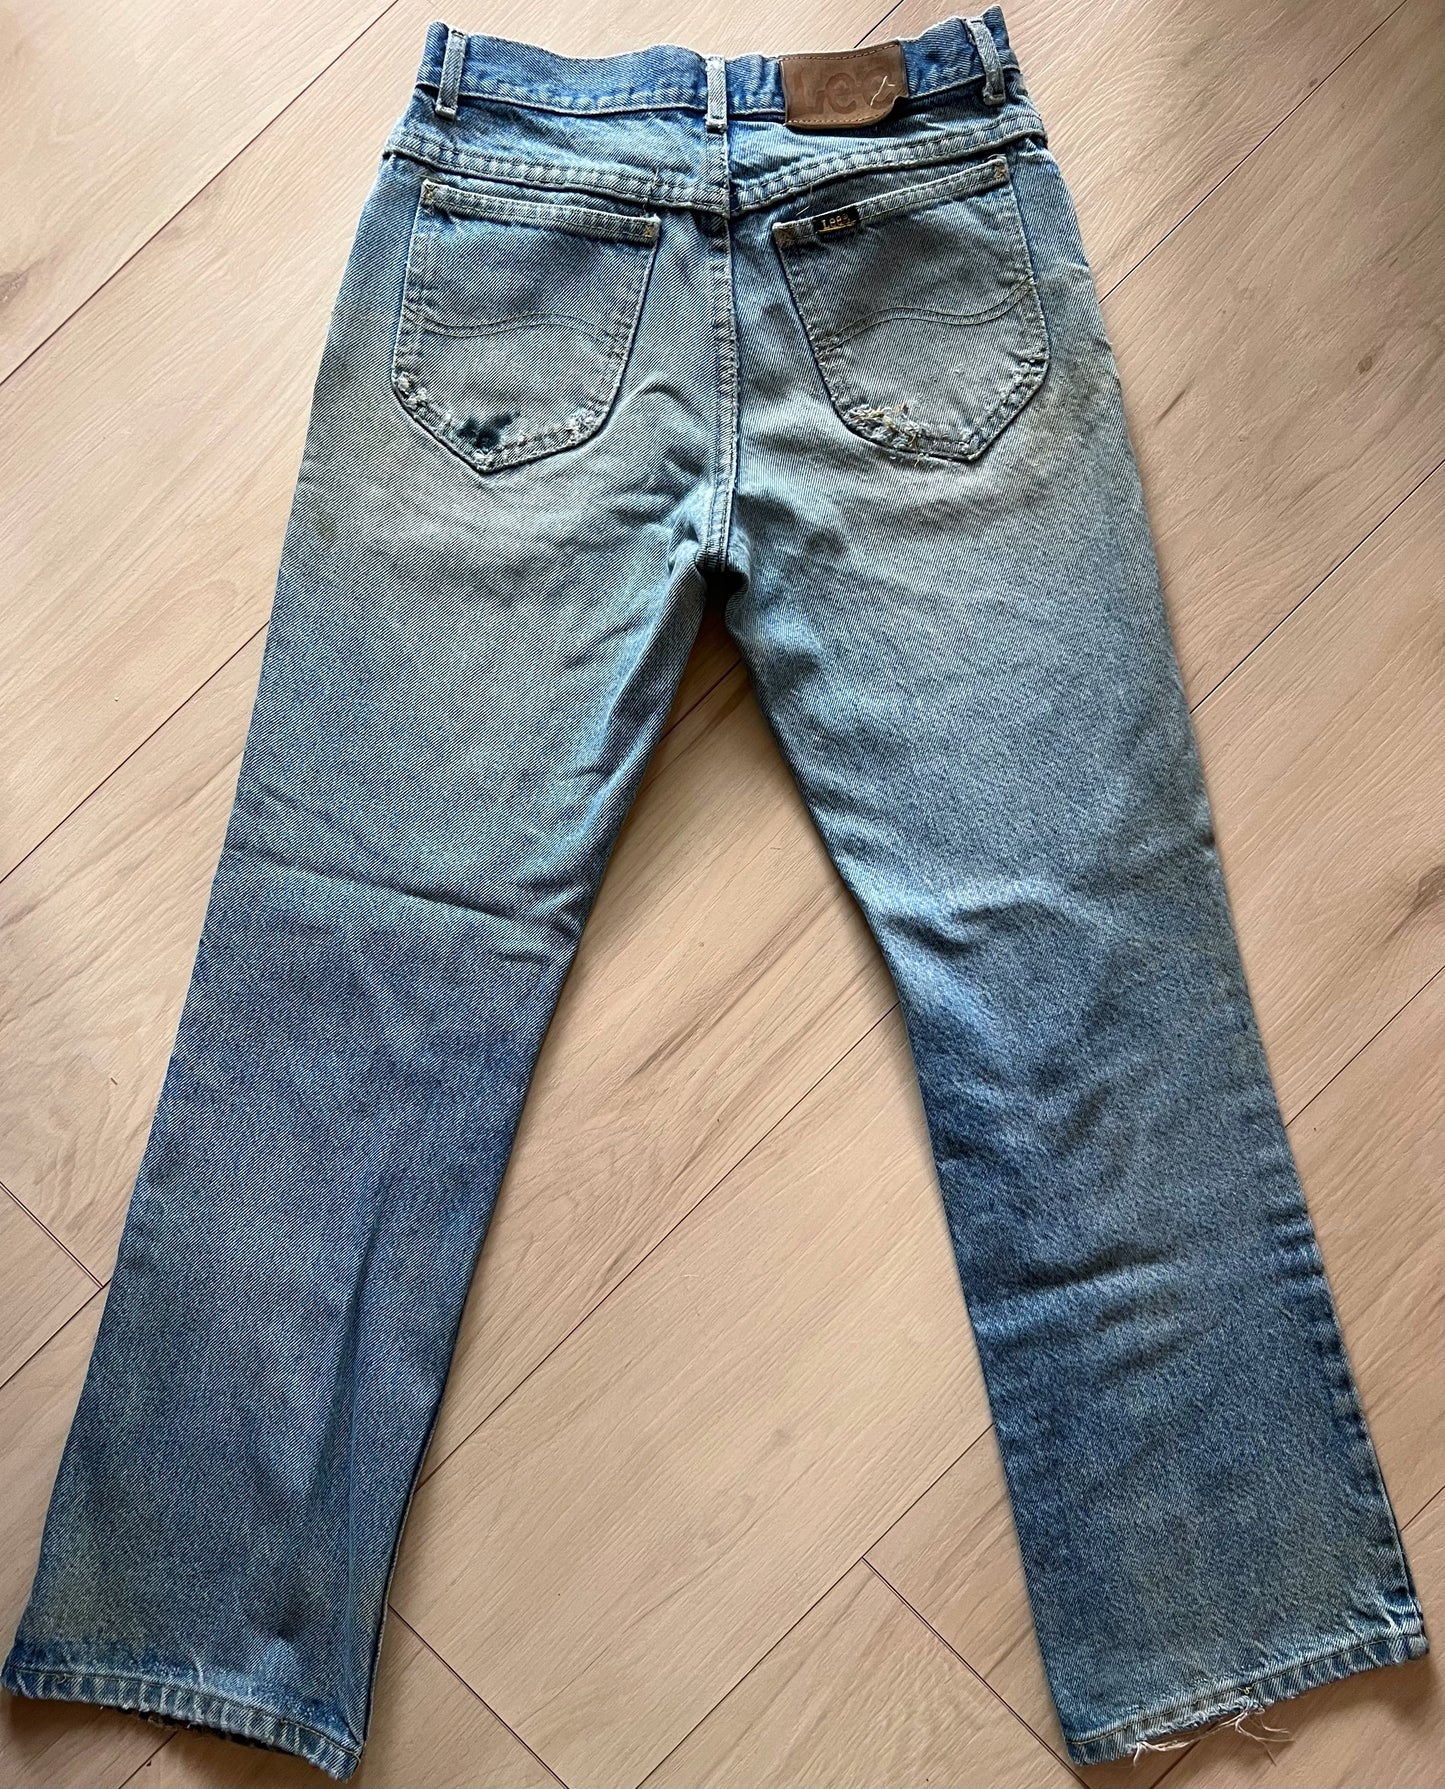 Size 26 Vintage Lee Rider Jeans